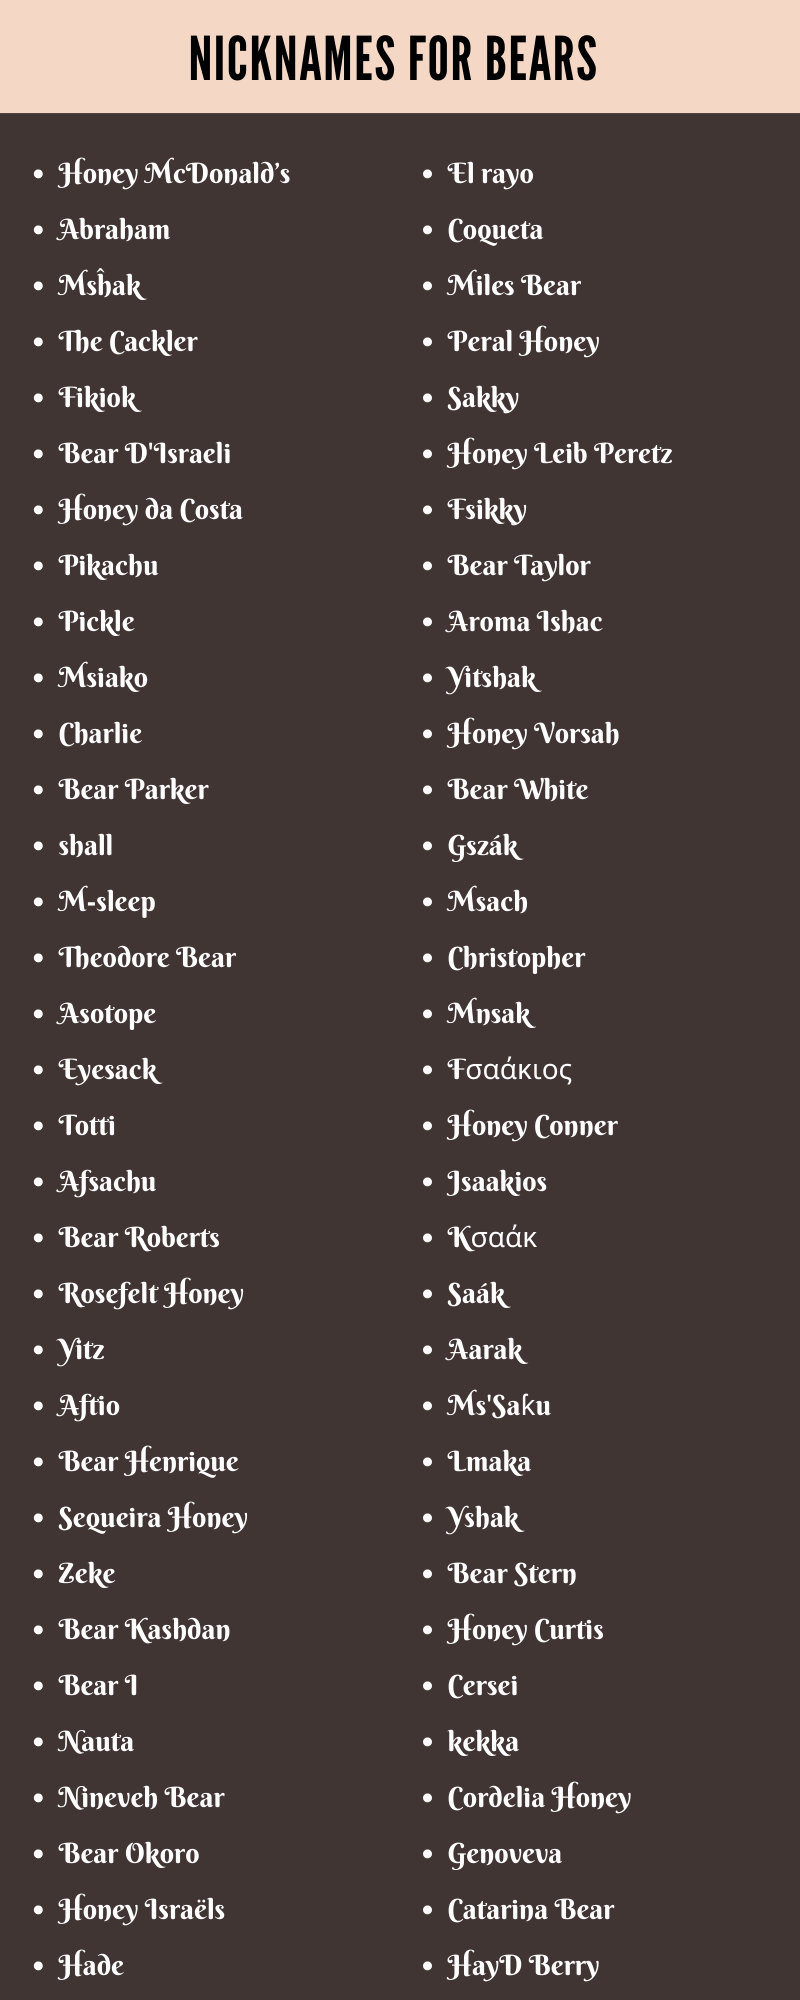 Nicknames For Bears